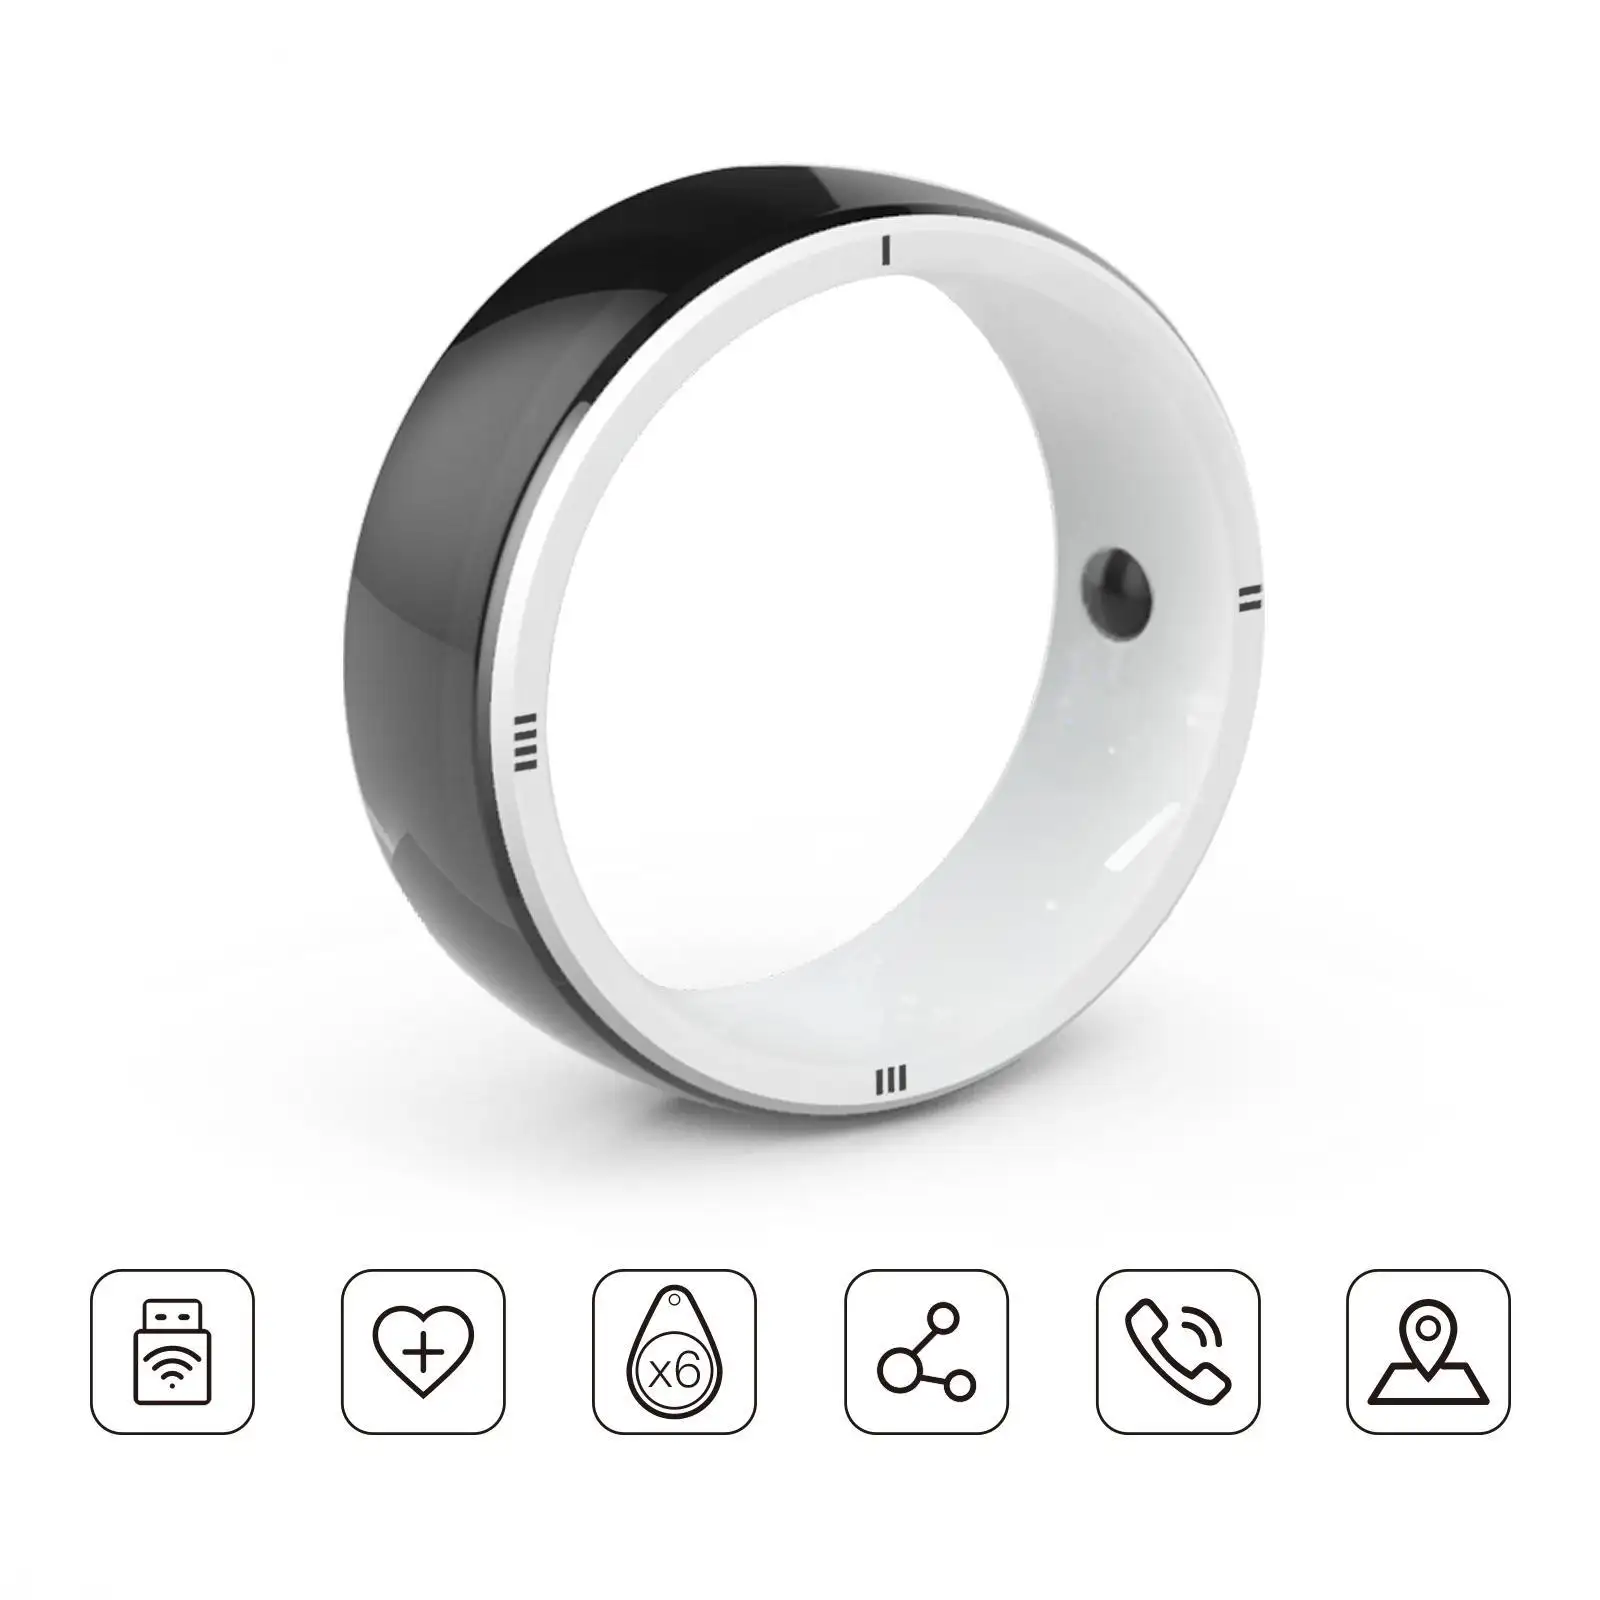 Anello intelligente JAKCOM R5 nuovo Smart Ring Super valore come 6 auricolari enclave home theater 2014 a basso costo adattatore tv lan per rf anime